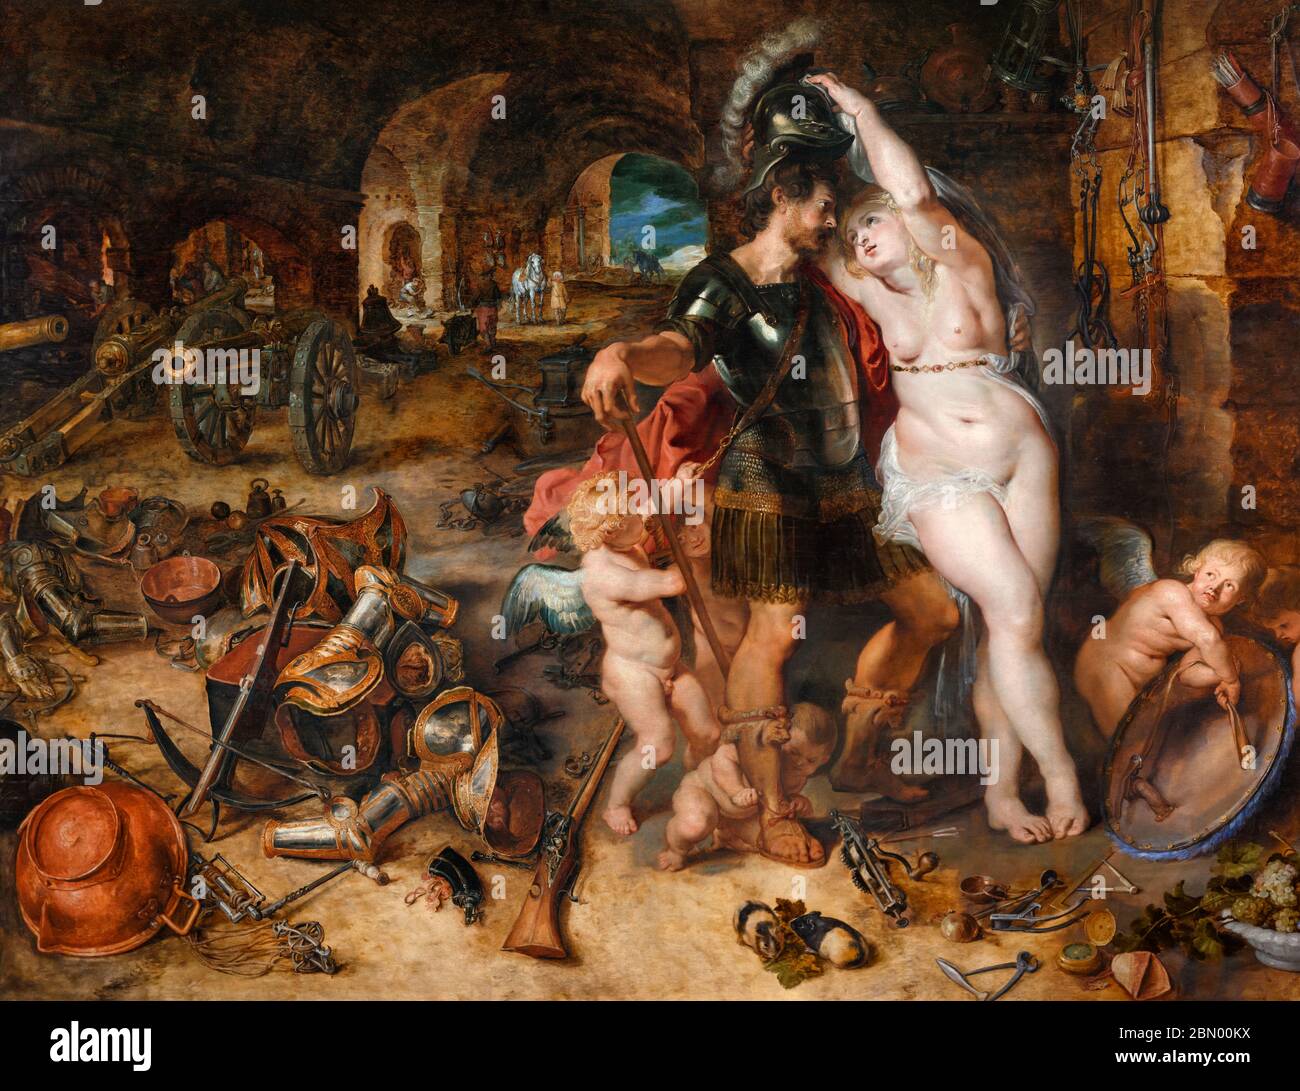 El regreso de la guerra: Marte desarmado por Venus por Peter Paul Rubens (1577-1640) y Jan Brueghel el Viejo (1568-1625), óleo sobre panel de madera, 1610-12 Foto de stock